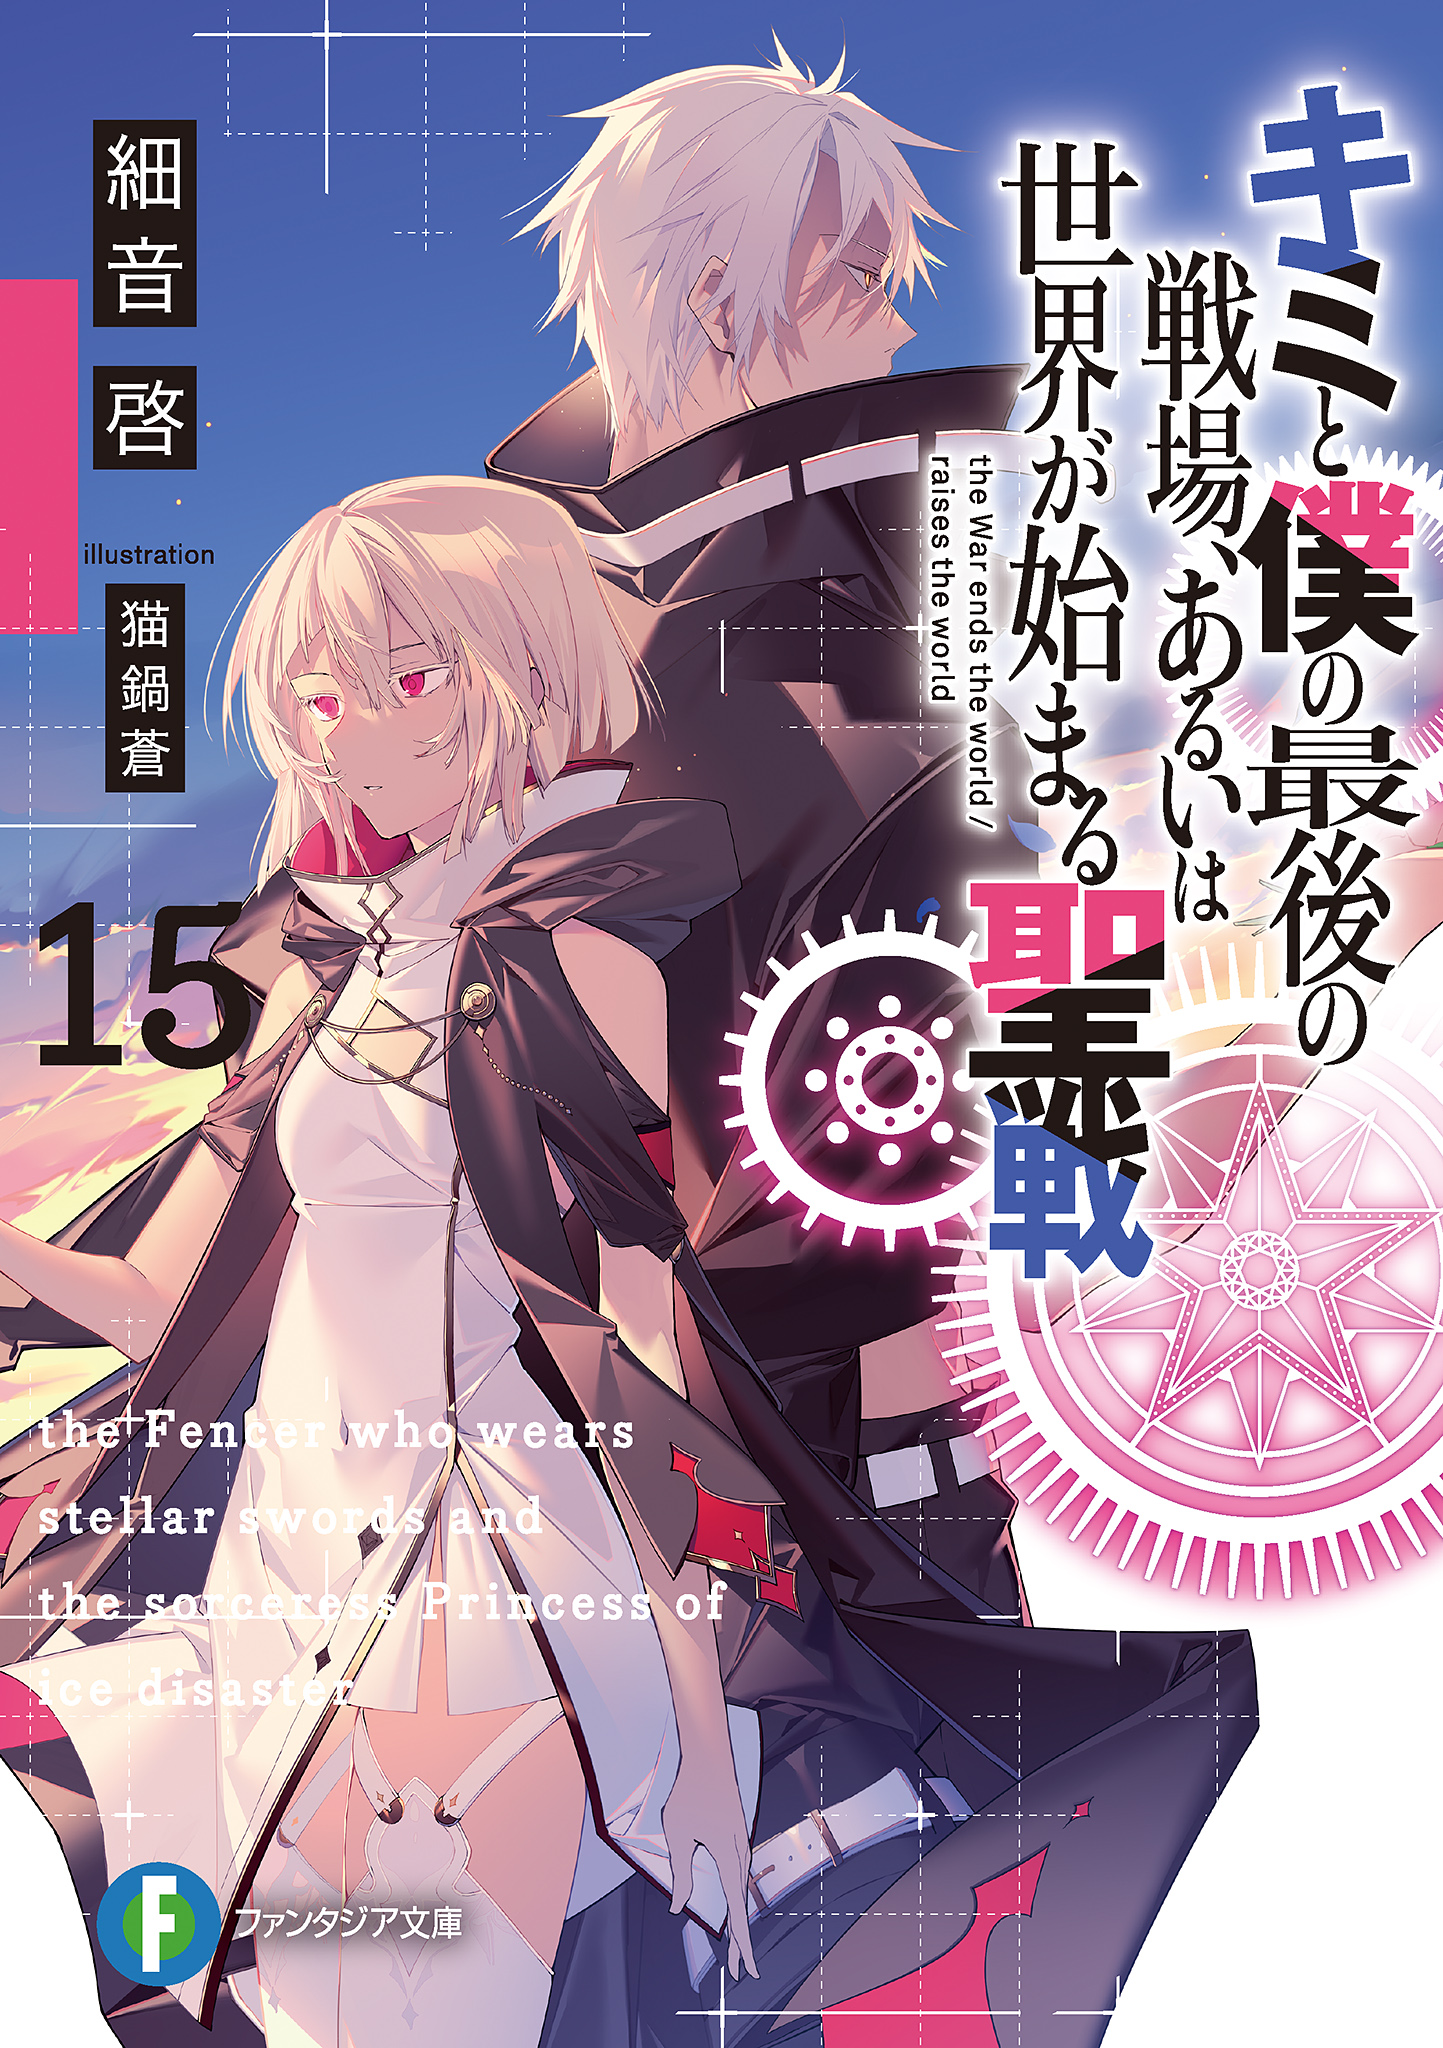 Light Novel Volume 15, KimiSen Wiki